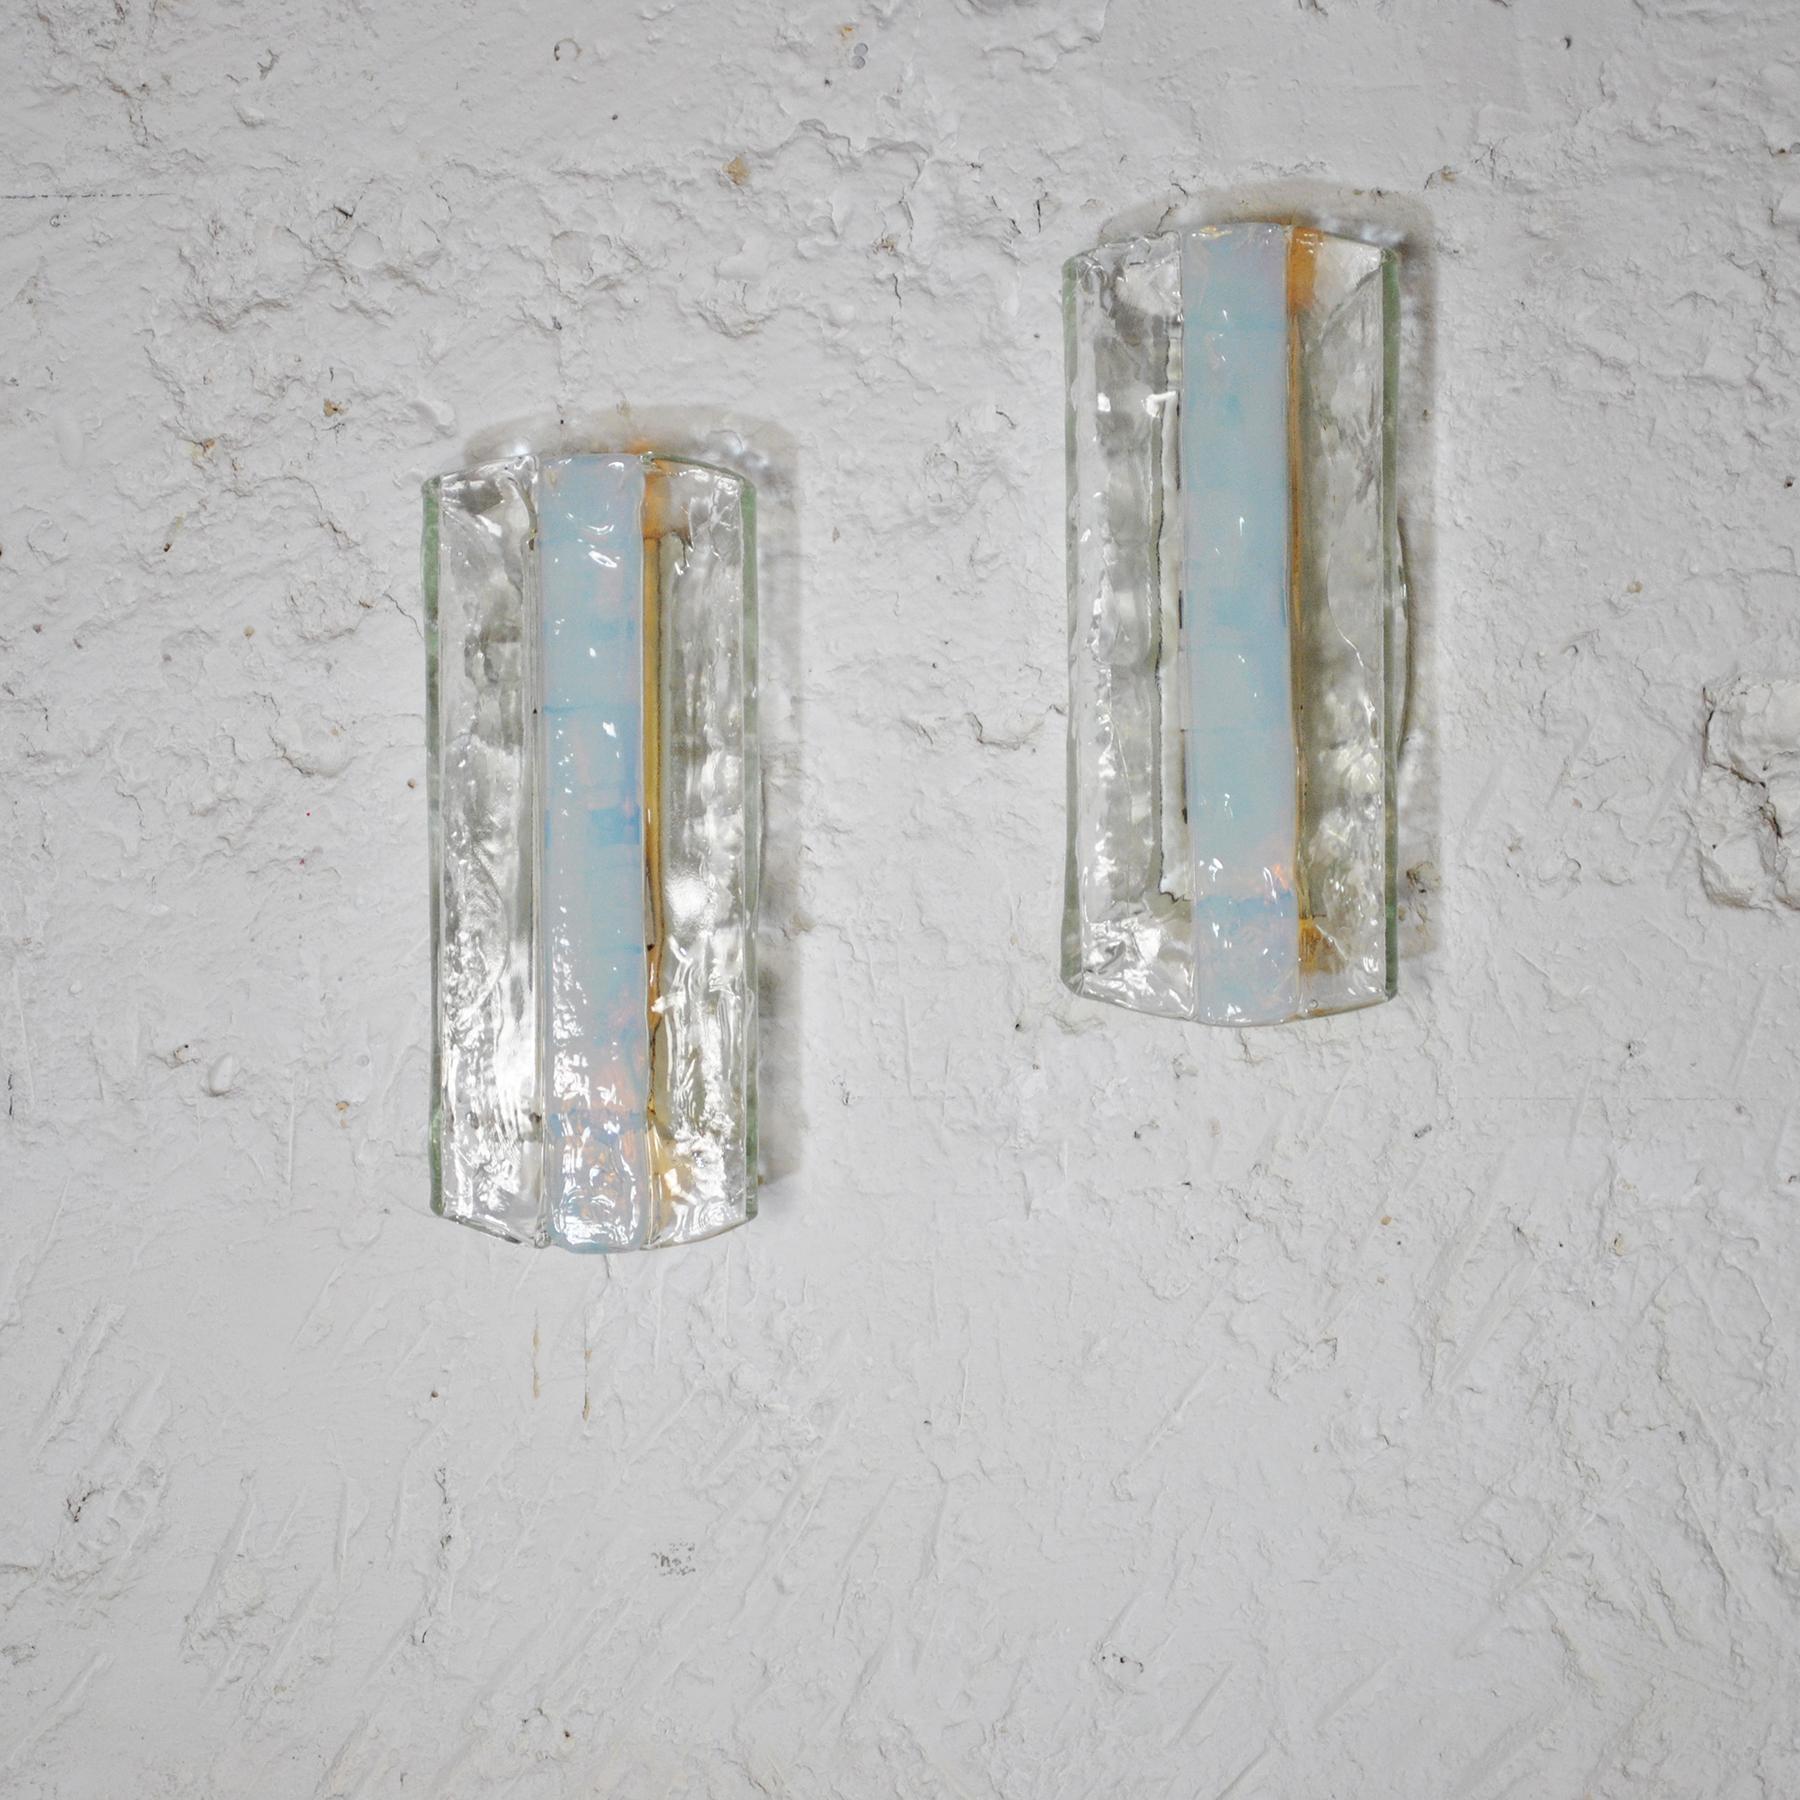 Ensemble de deux appliques Mazzega de l'entreprise vénitienne de soufflage de verre A.V. Mazzega. Le verre texturé transparent est orné d'une bande de verre opalescent fusionné, vert-bleu, appliquée au centre de chaque applique, dans des tons